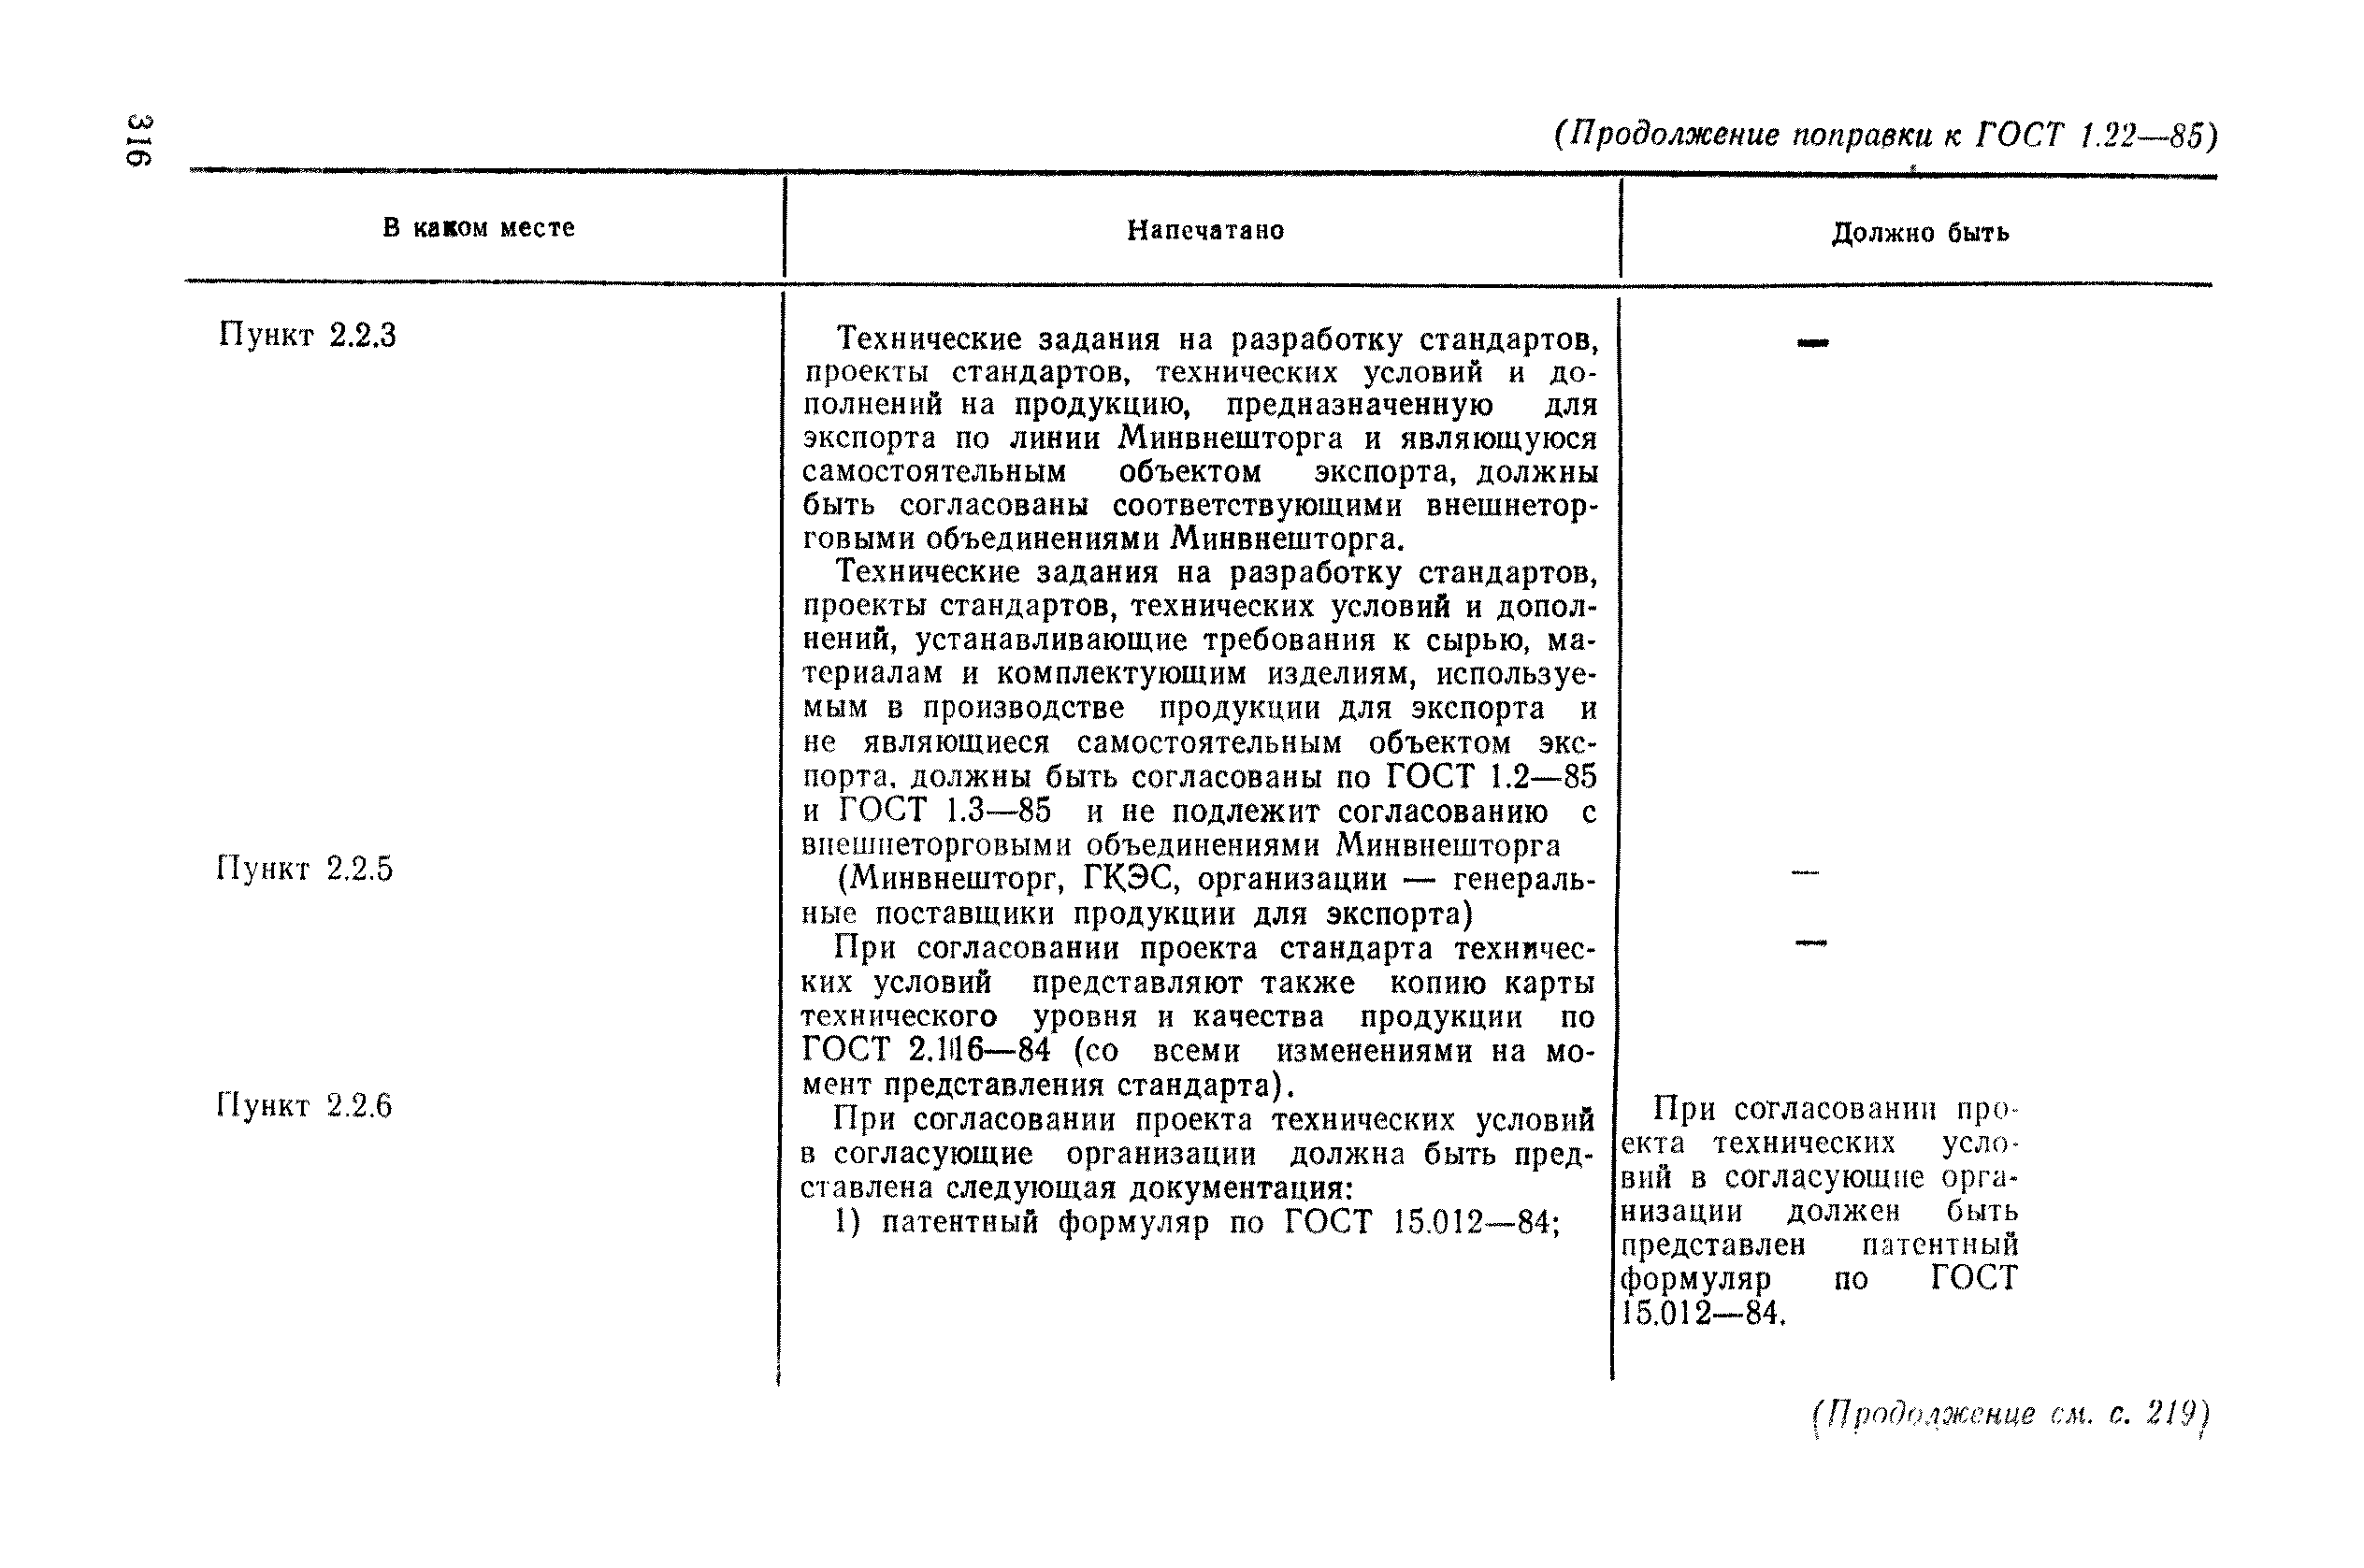 ГОСТ 15.012-96 патентный формуляр